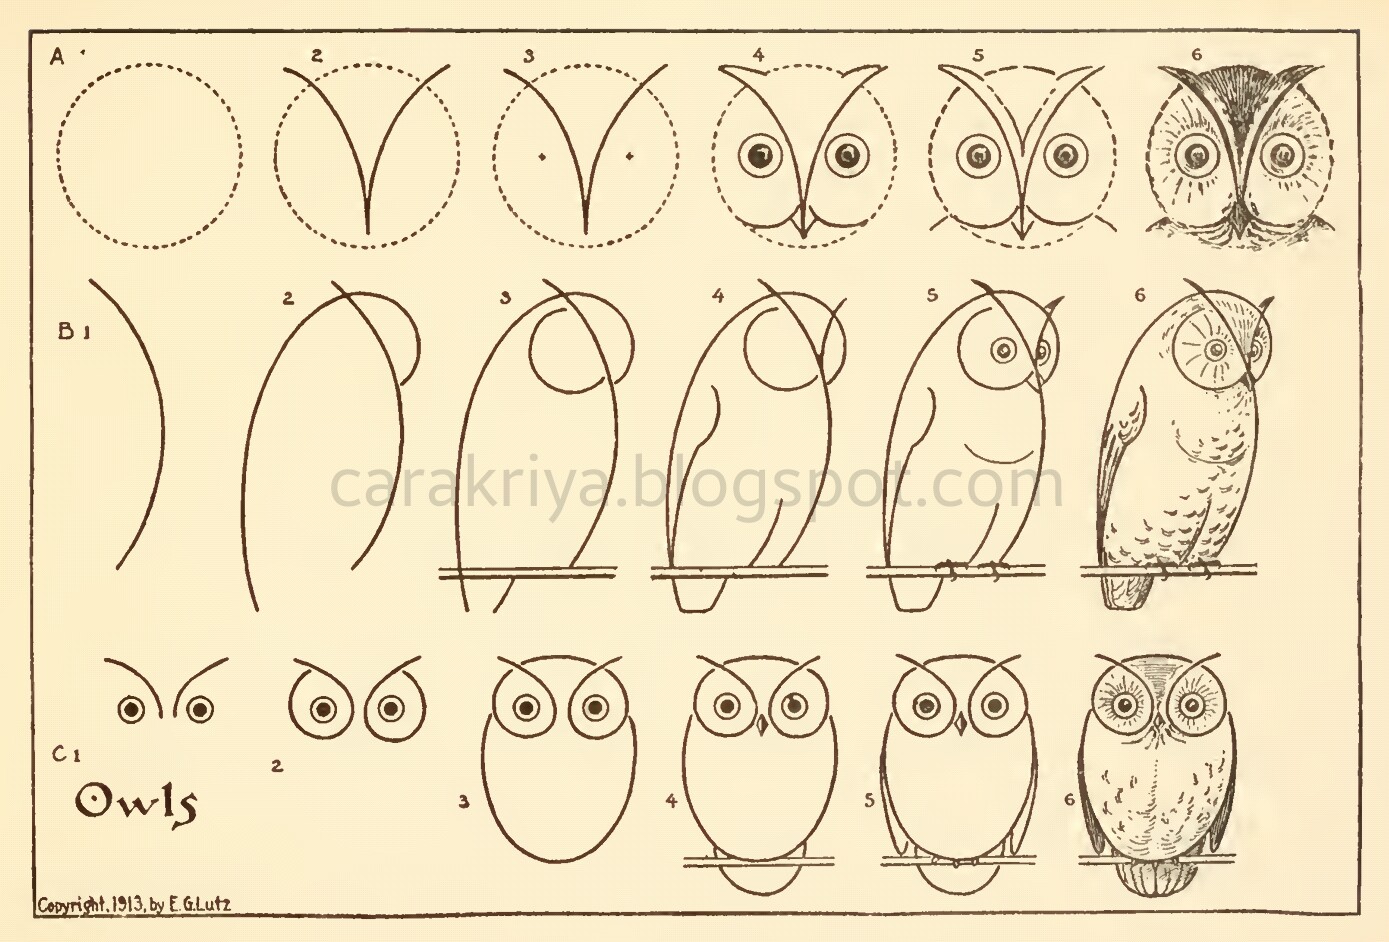 Cara Kriya: Cara mudah menggambar burung